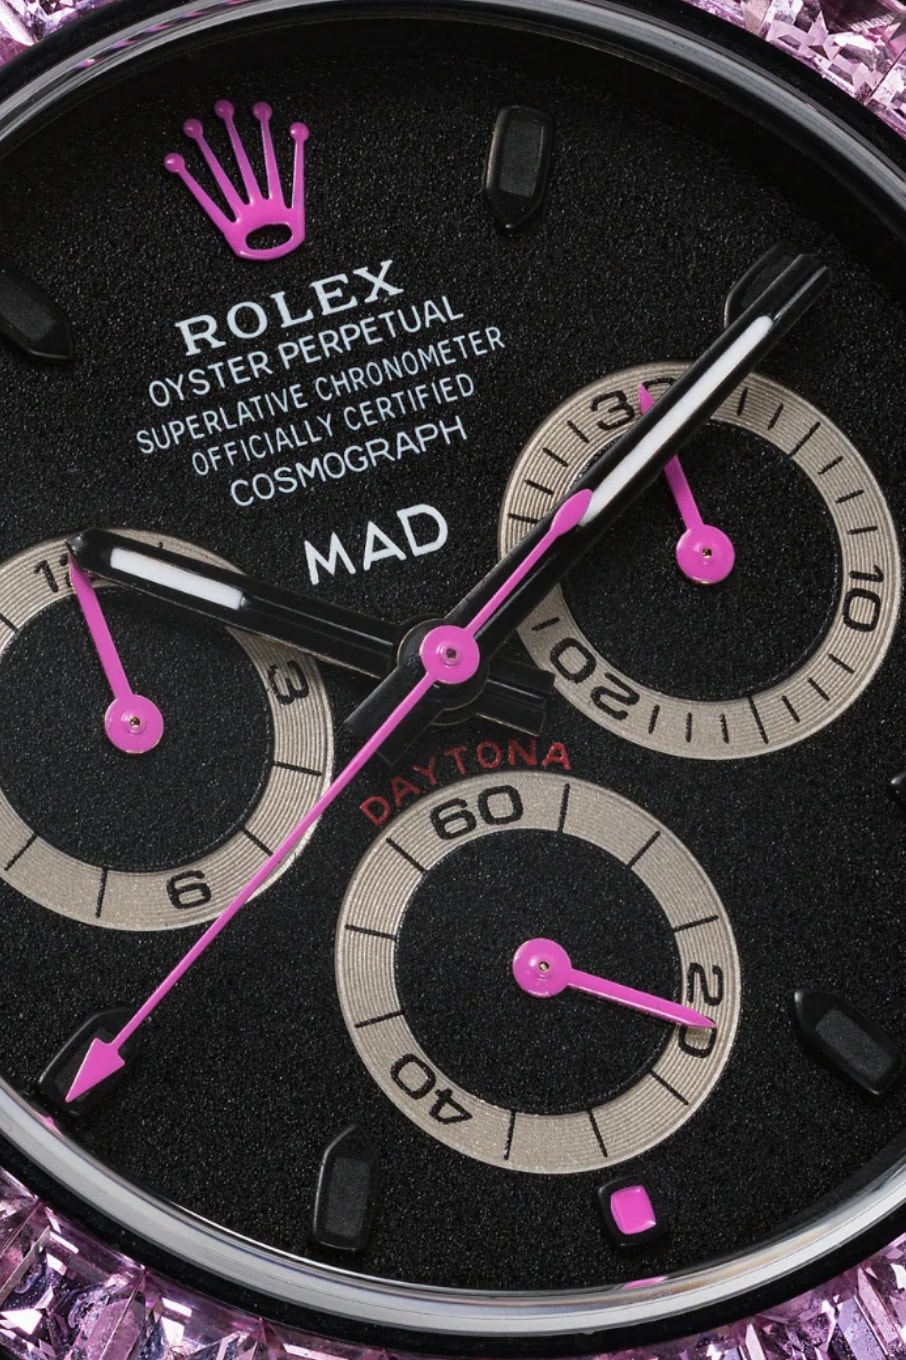 MAD Paris Black Rolex Daytona Pink Sapphire Watch timepieces accessories browns fashion